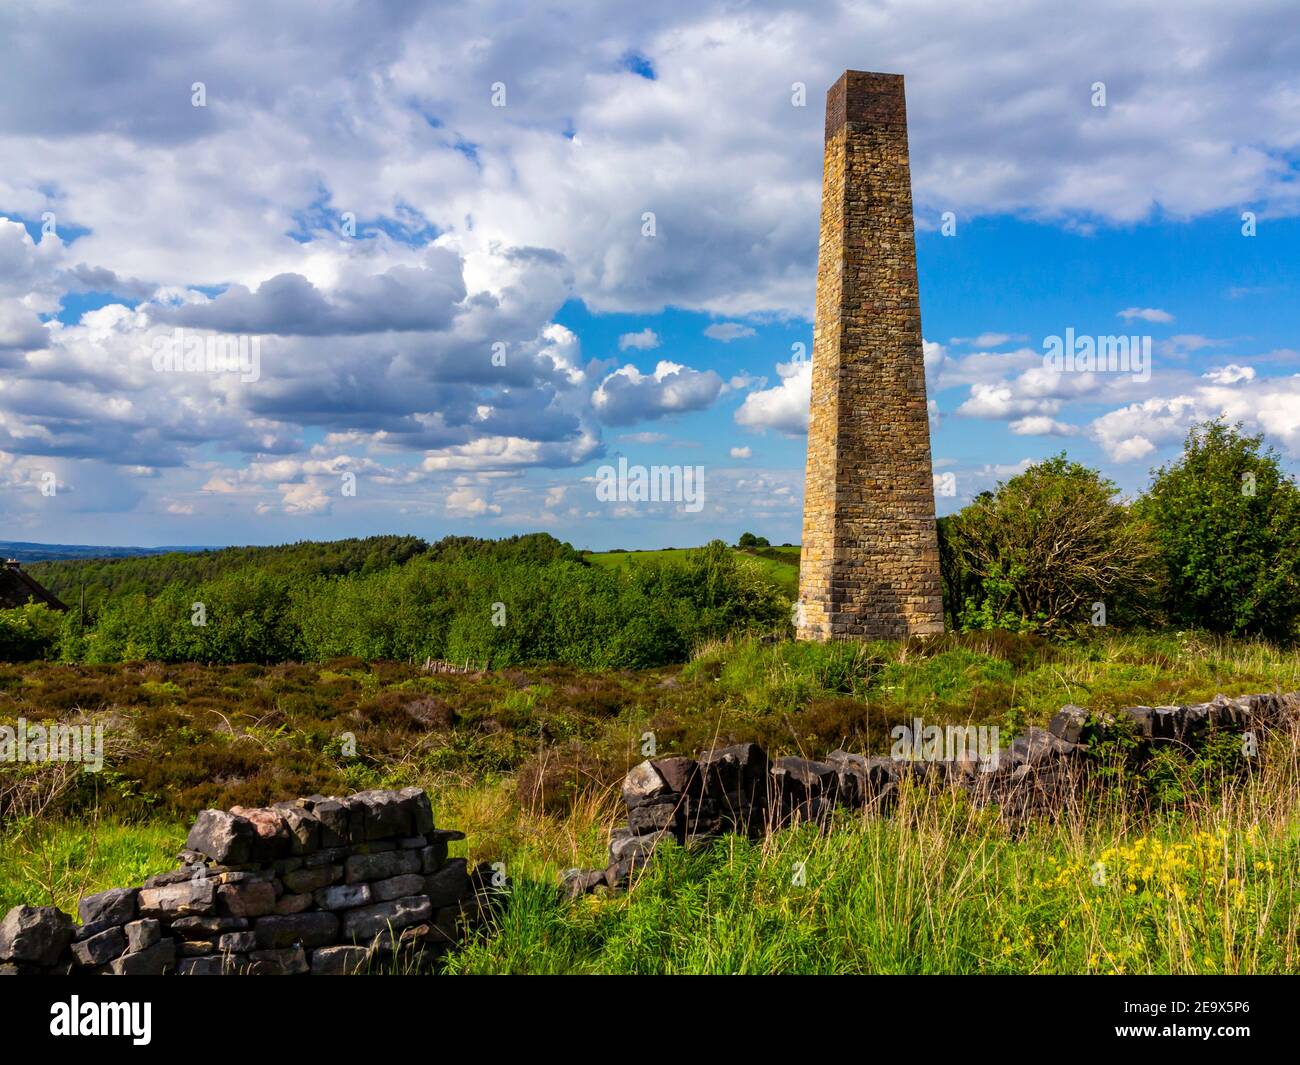 Stone Edge cheminée construit 1771 la plus ancienne cheminée autonome du Royaume-Uni près de Spitewinter Chesterfield Debyshire Angleterre Royaume-Uni utilisé pour éperlan le plomb. Banque D'Images